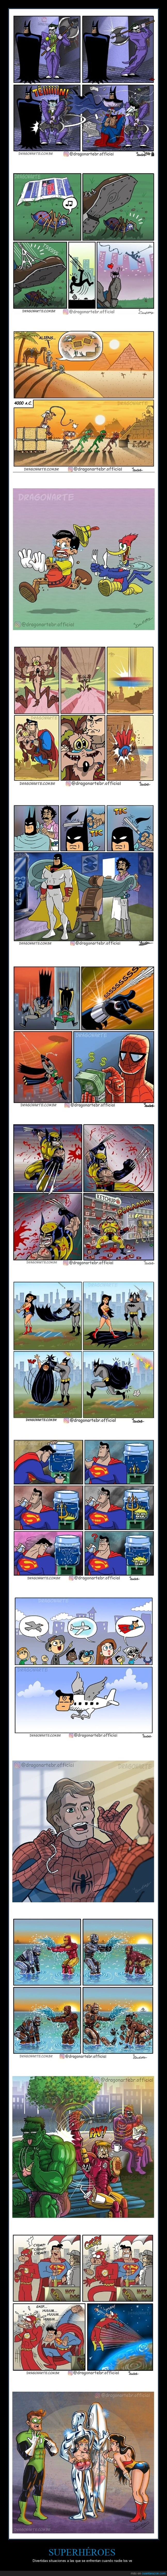 superhéroes,cómics